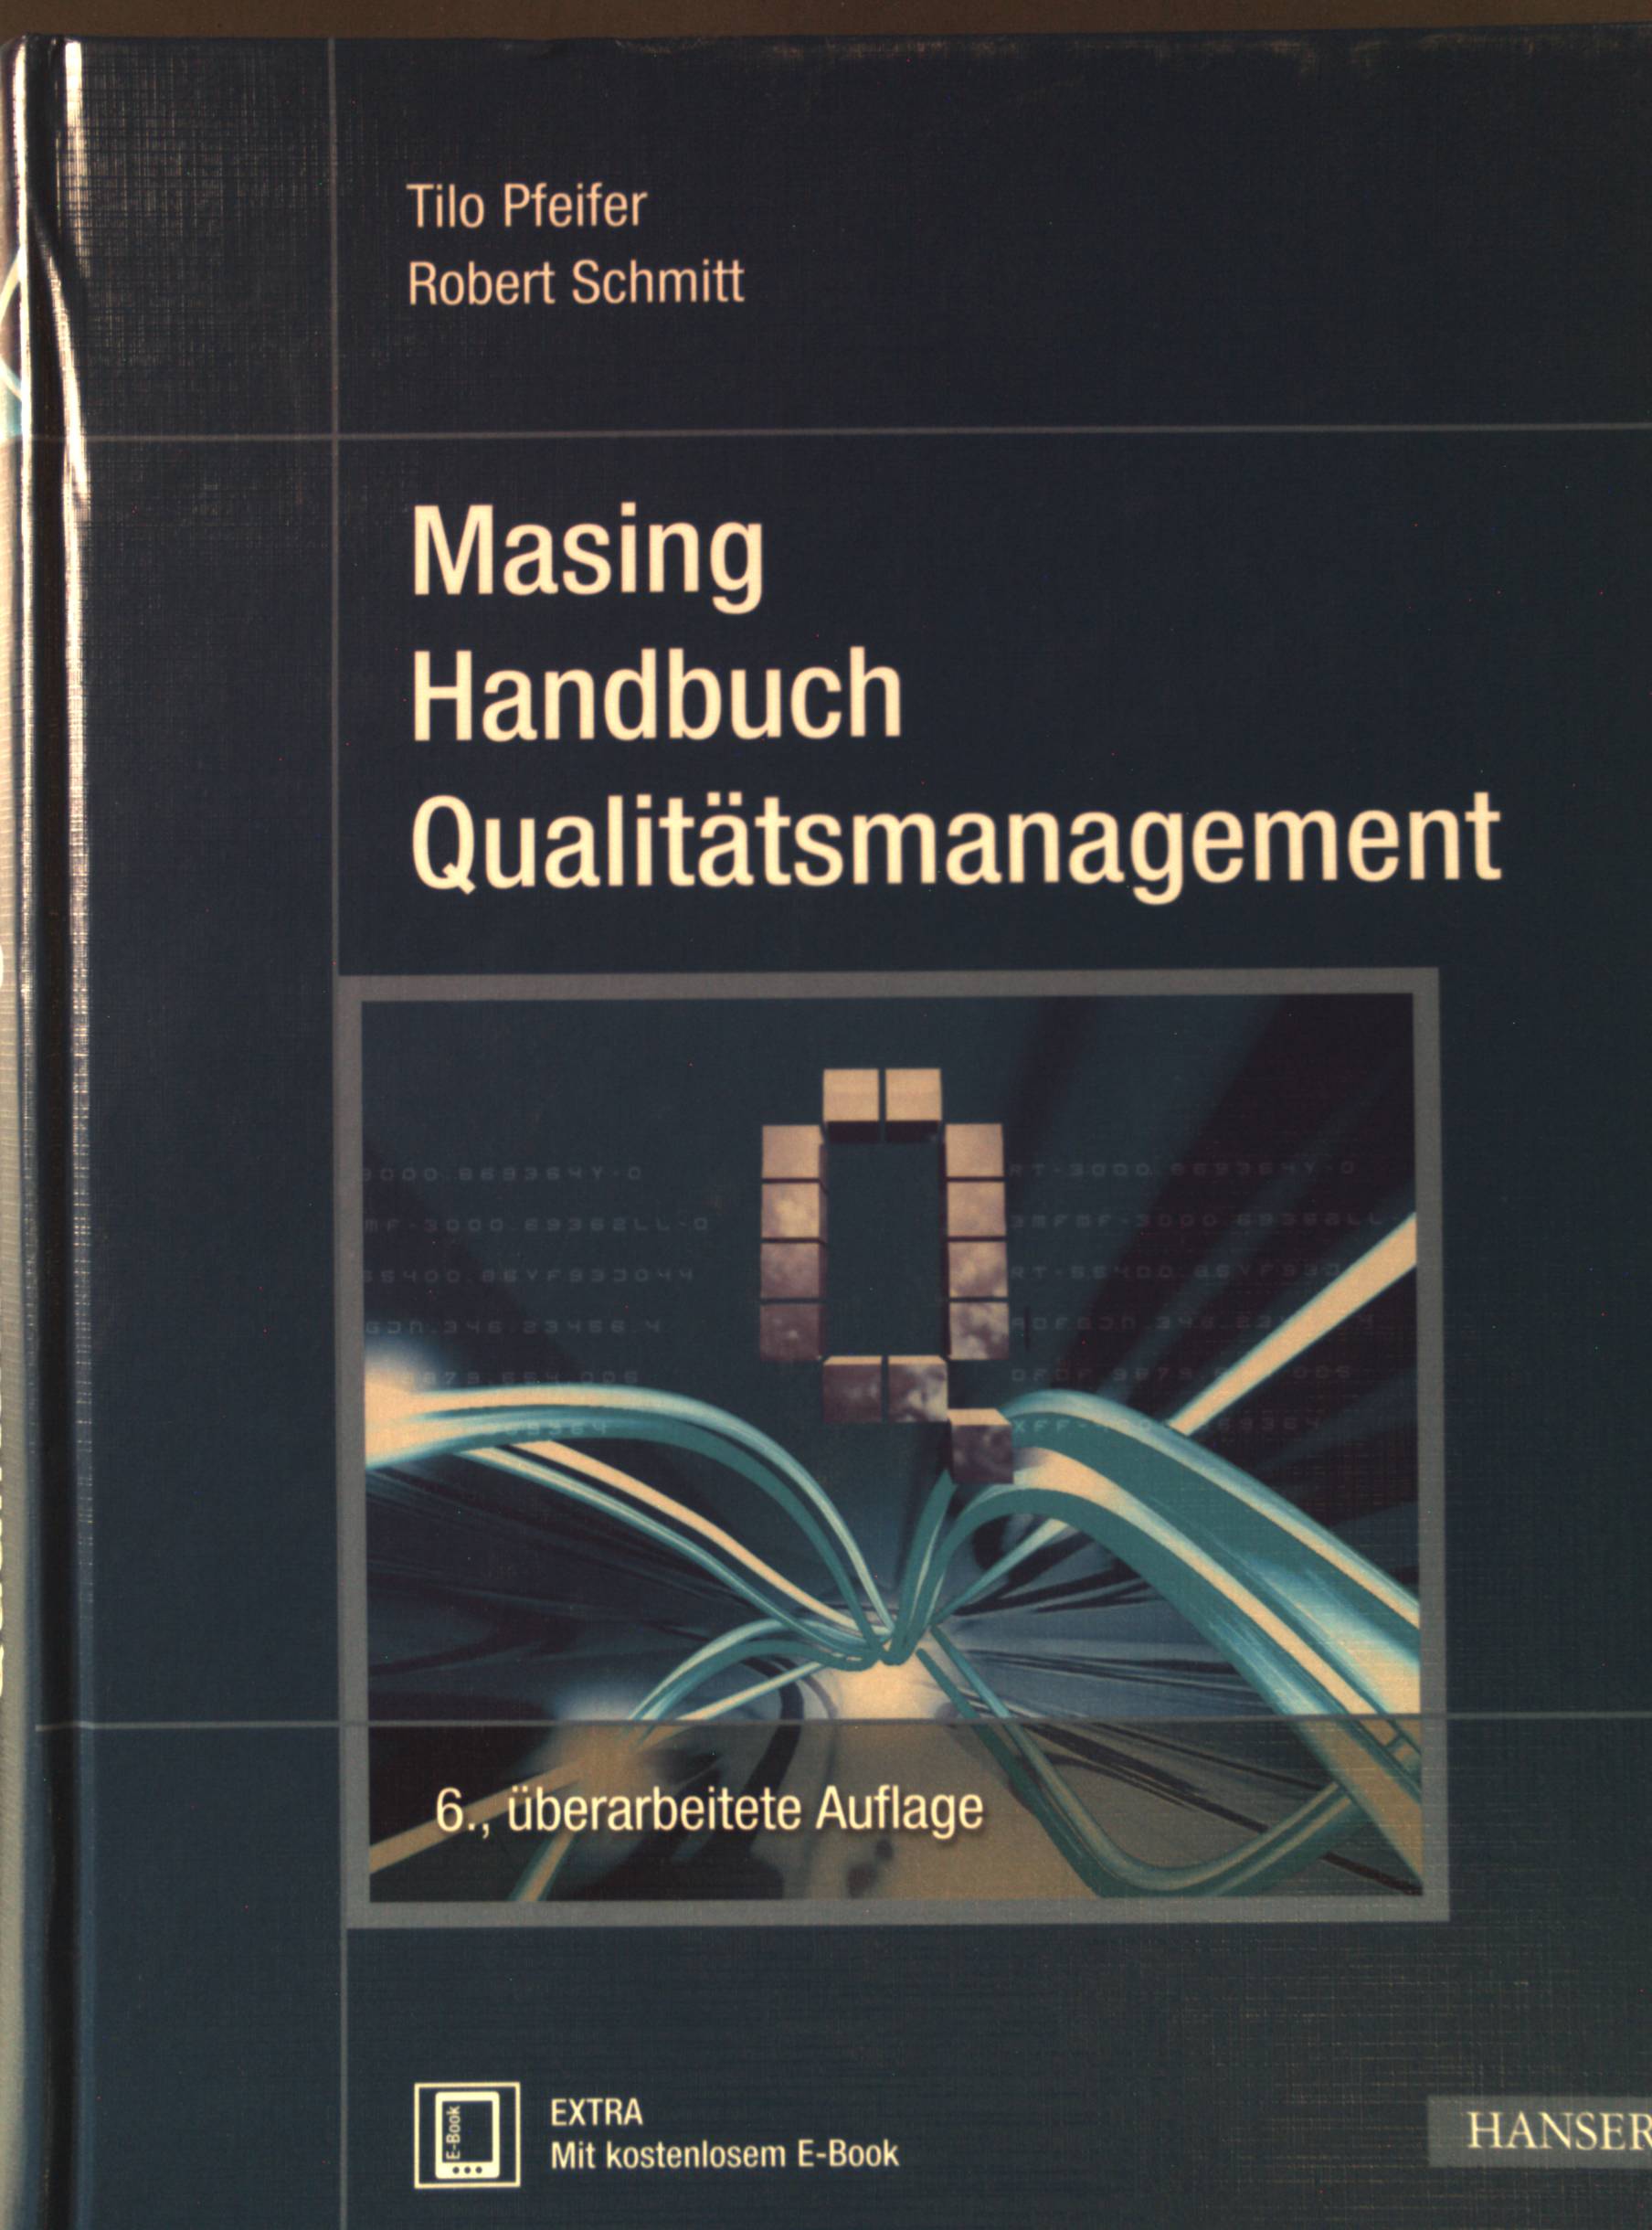 Handbuch Qualitätsmanagement. - Masing, Walter, Tilo Pfeifer und Markus Bautsch